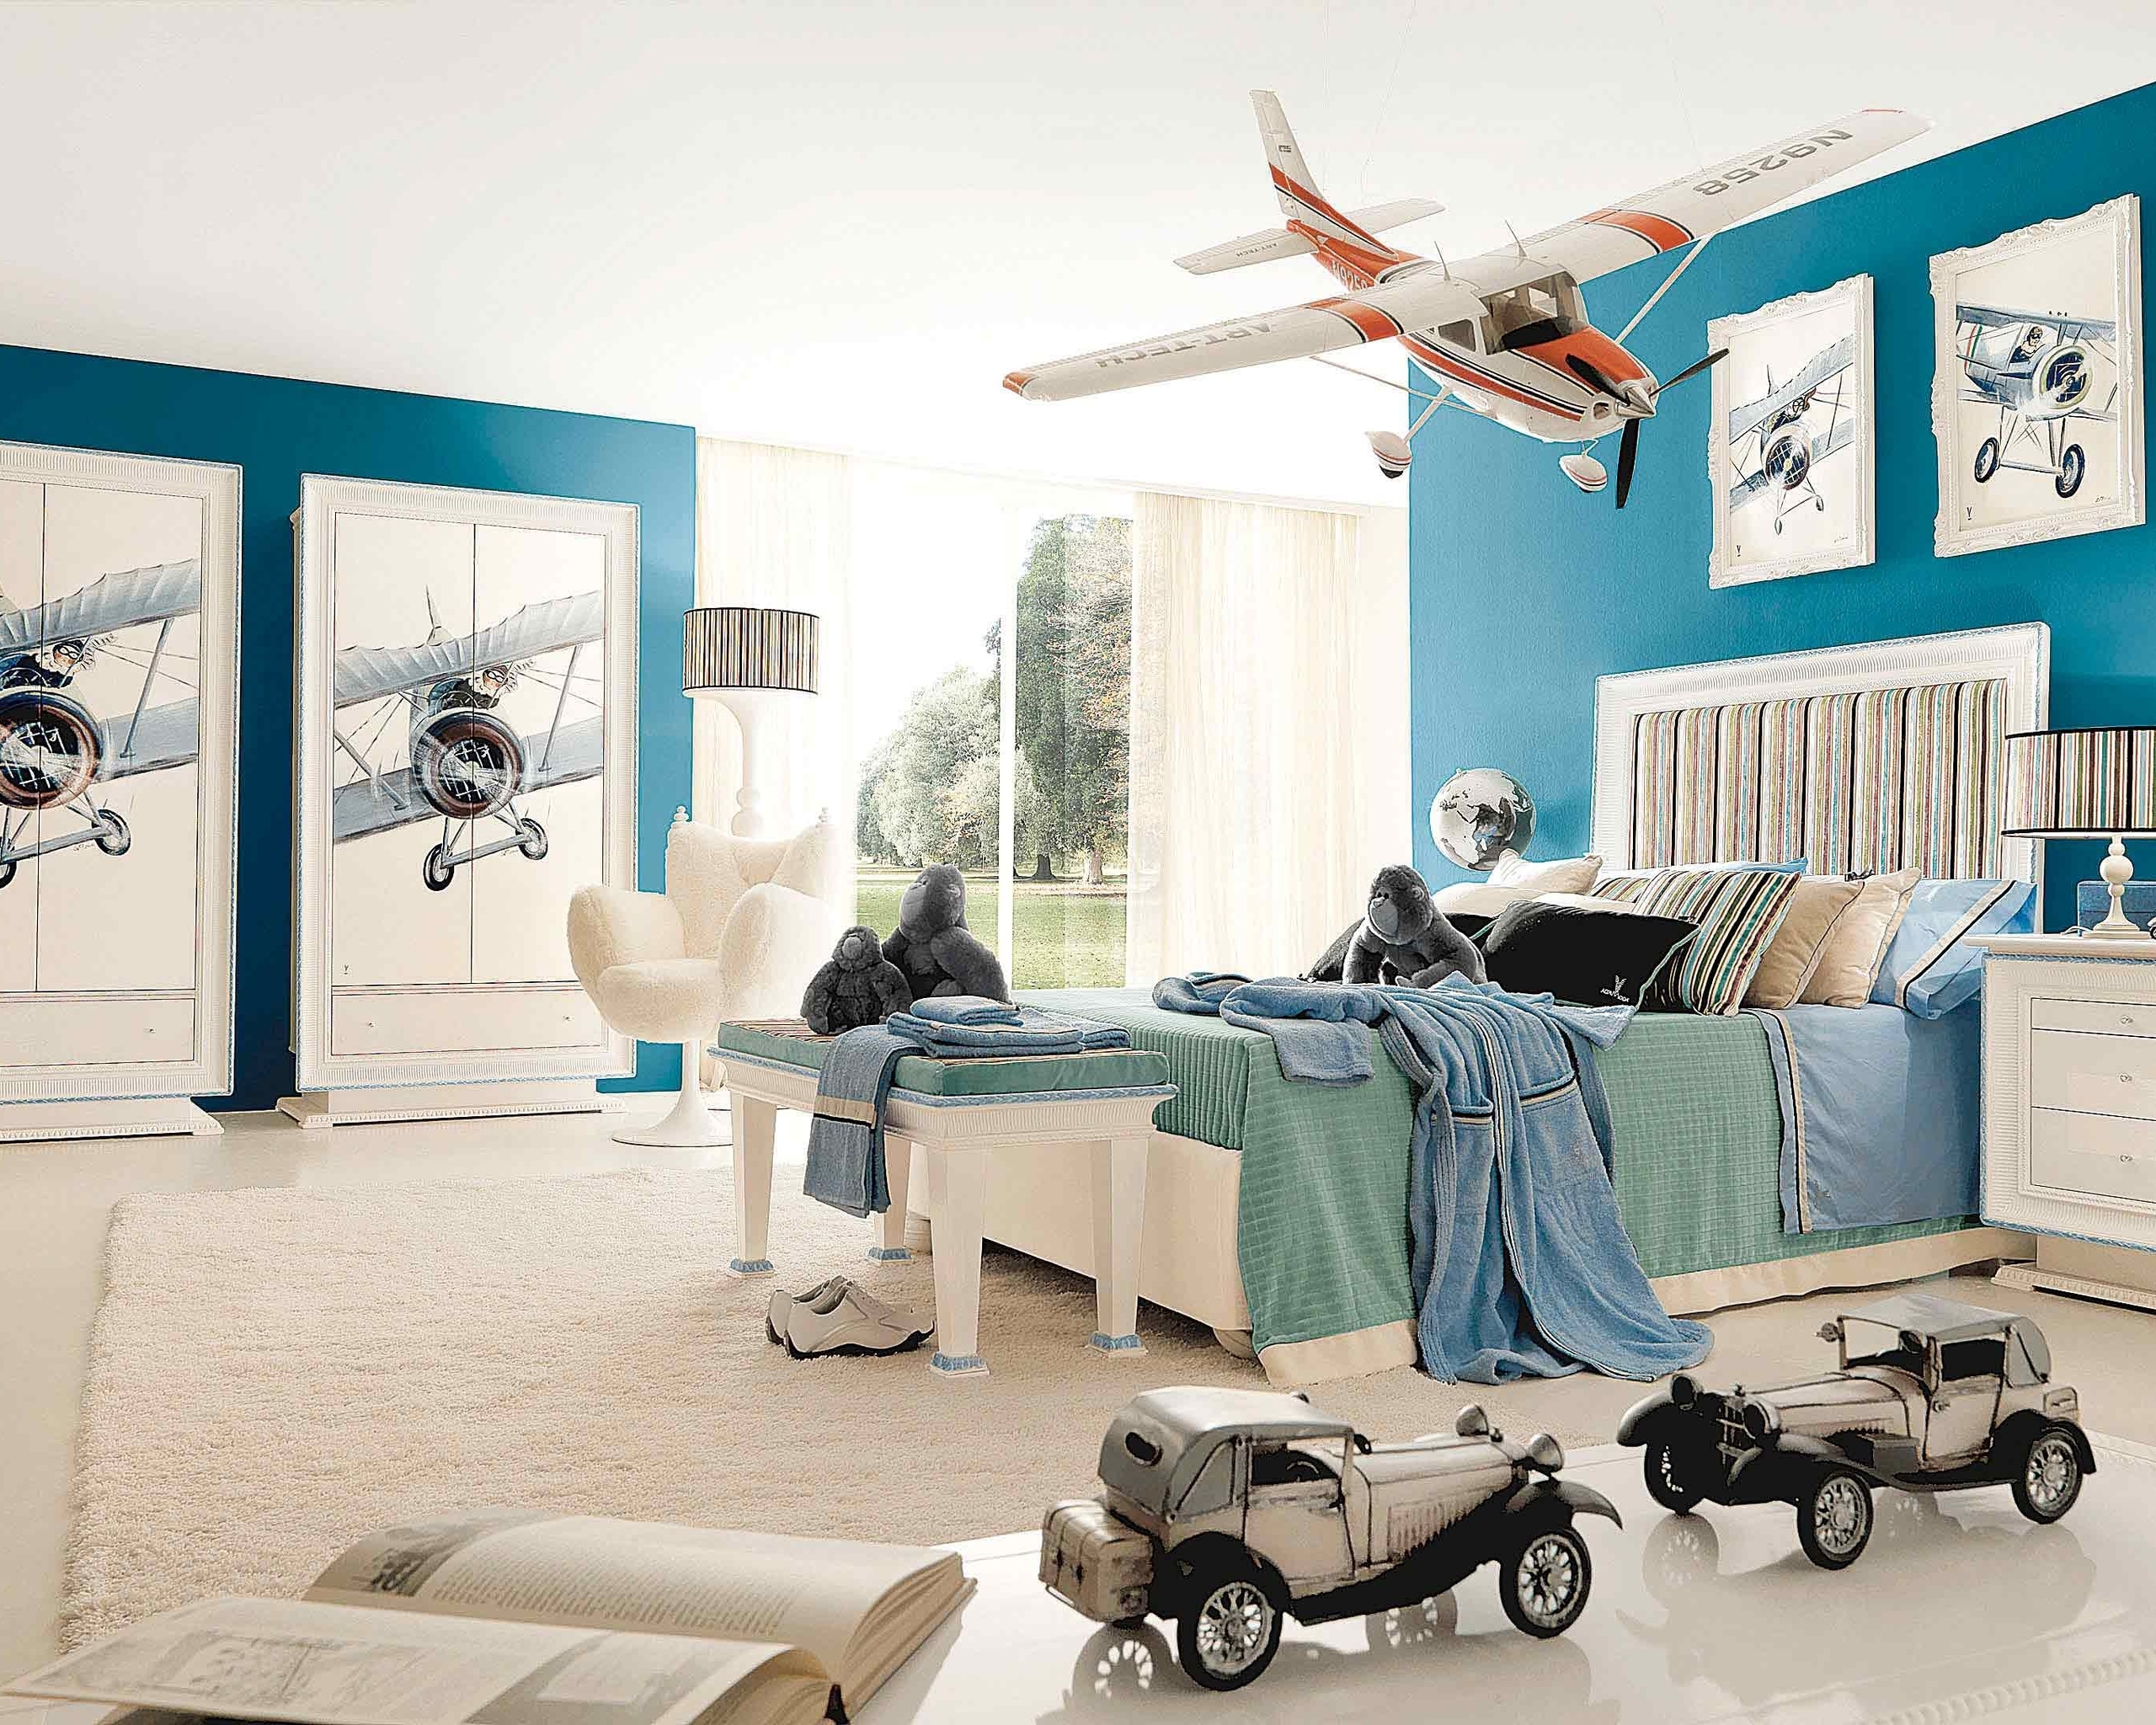 Картинка: Детская комната, кровать, ковёр, торшер, картины, самолёты, игрушки, машинки